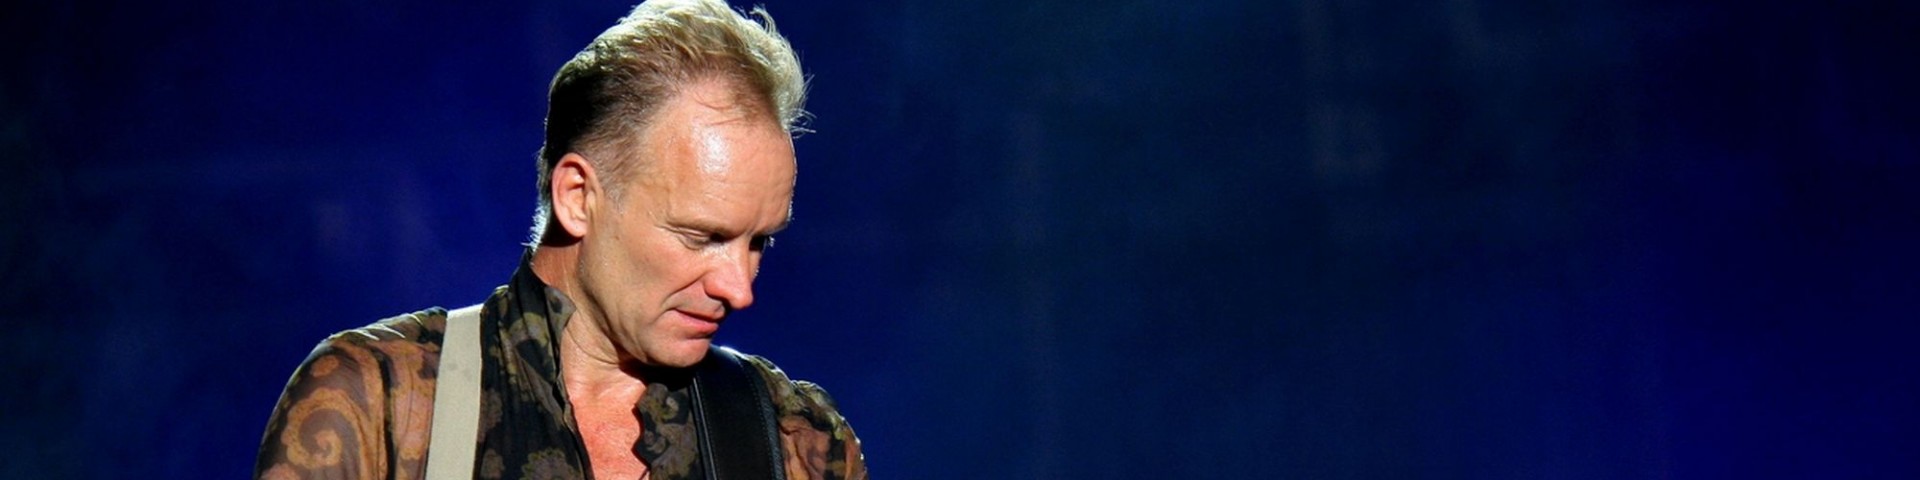 Sting in concerto a Parma martedì 20 luglio 2021: come acquistare i biglietti su Ticketmaster